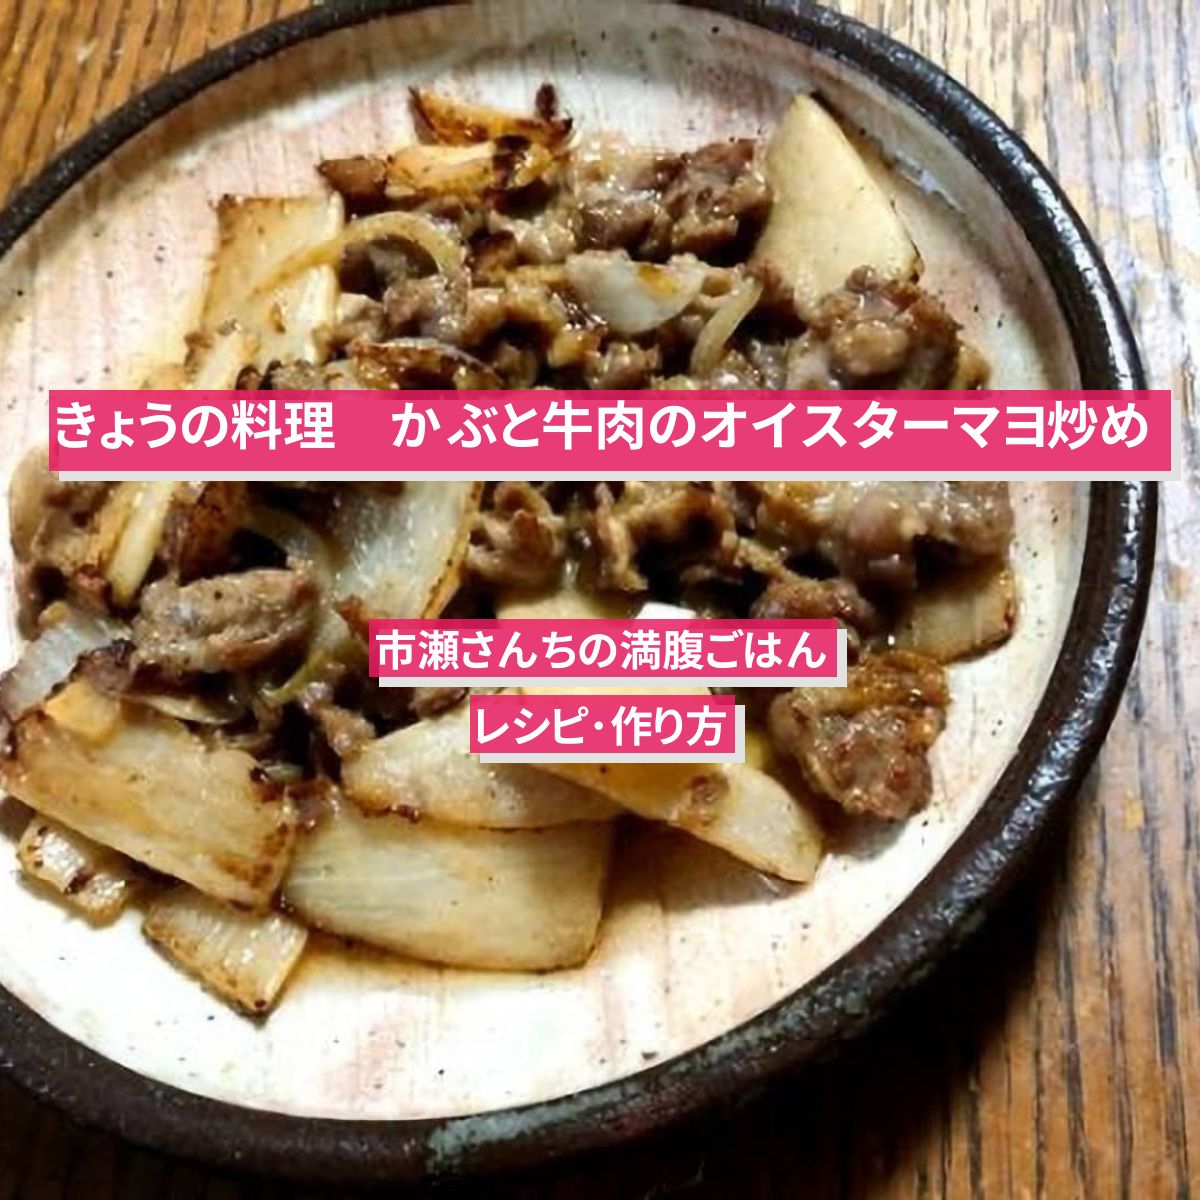 【きょうの料理】『かぶと牛肉のオイスターマヨ炒め』のレシピ･作り方